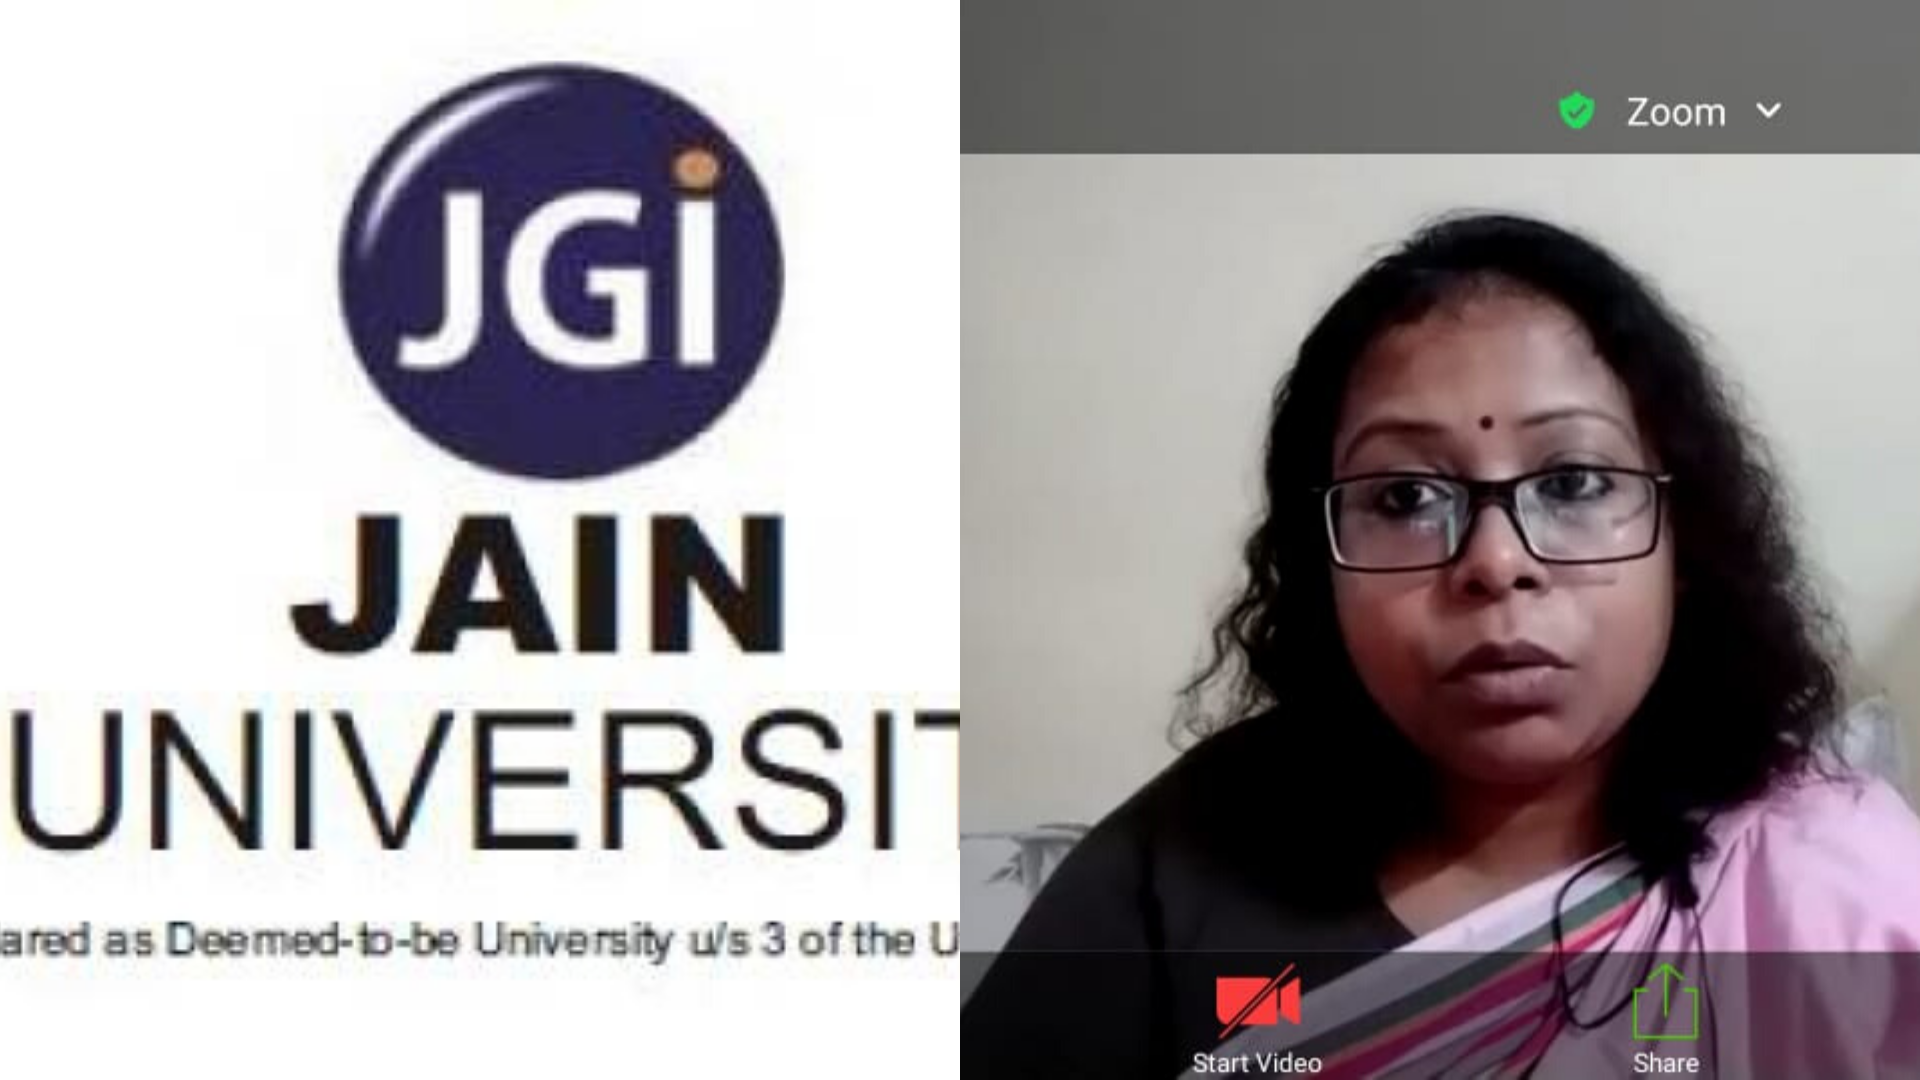 "आत्मनिर्भरता स्त्रियों का हक है," जैन संभाव्य विश्वविद्यालय के हिंदी विभाग वेबिनार में बोलीं यूथ डिग्निटी अवॉर्ड तथा अंबेडकर सम्मान से सम्मानित नीतिशा खलखो